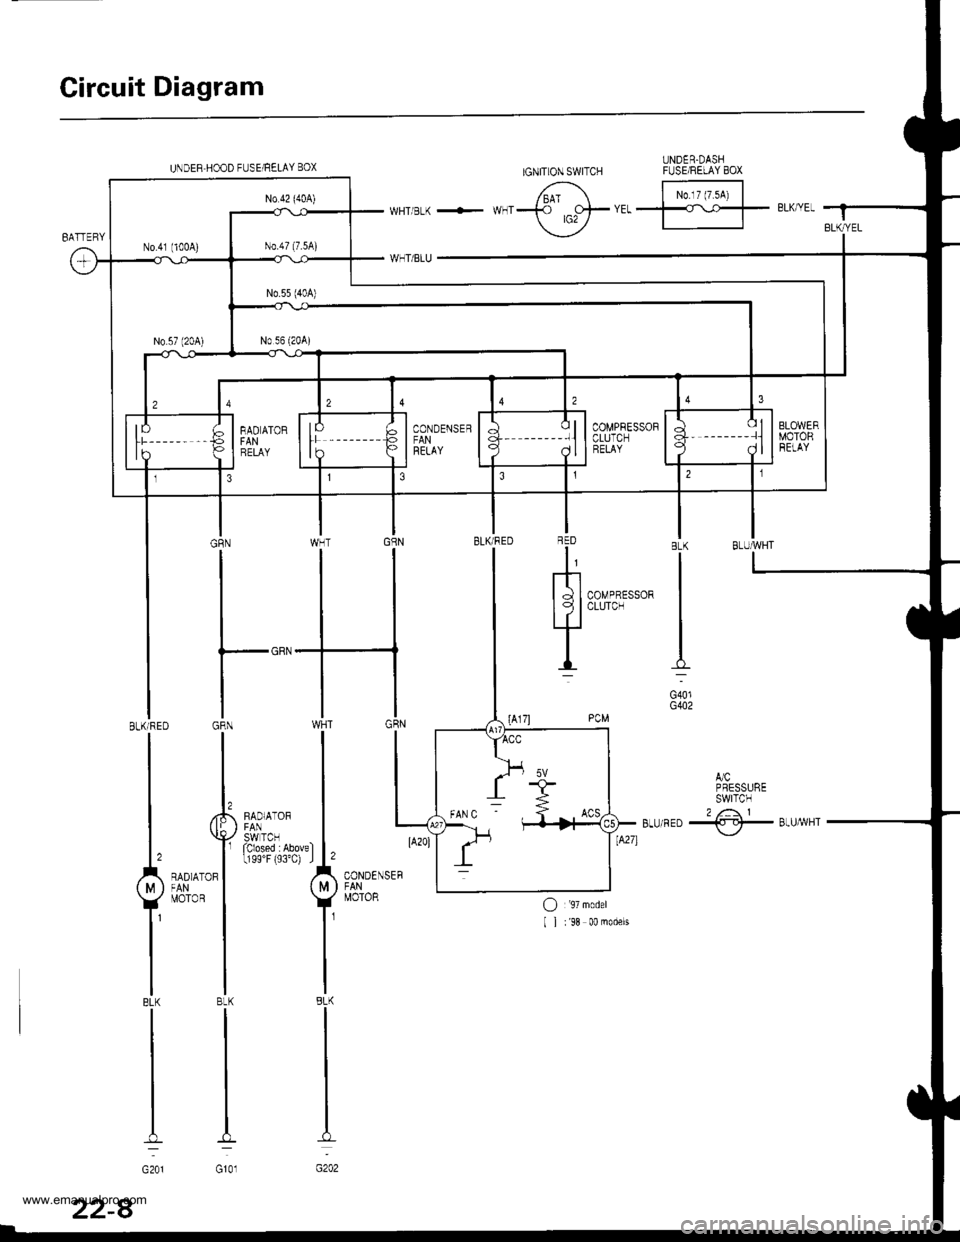 HONDA CR-V 2000 RD1-RD3 / 1.G Repair Manual 
Circuit Diagram
UNDER.DASHFUSEiRELAY BOXIGNIT ON SWITCHUNDEB HOOD FUSE/RELAY BOX
/6^ F;t"^i IwHTBLK + **f ,o+trrffl- eLK/YEI f
\_-./
,JCPRESSURESWITCN2 /: 1Btu/RED -{.-!}- Btu/yvHT\,-/
BLUryVHTBLK